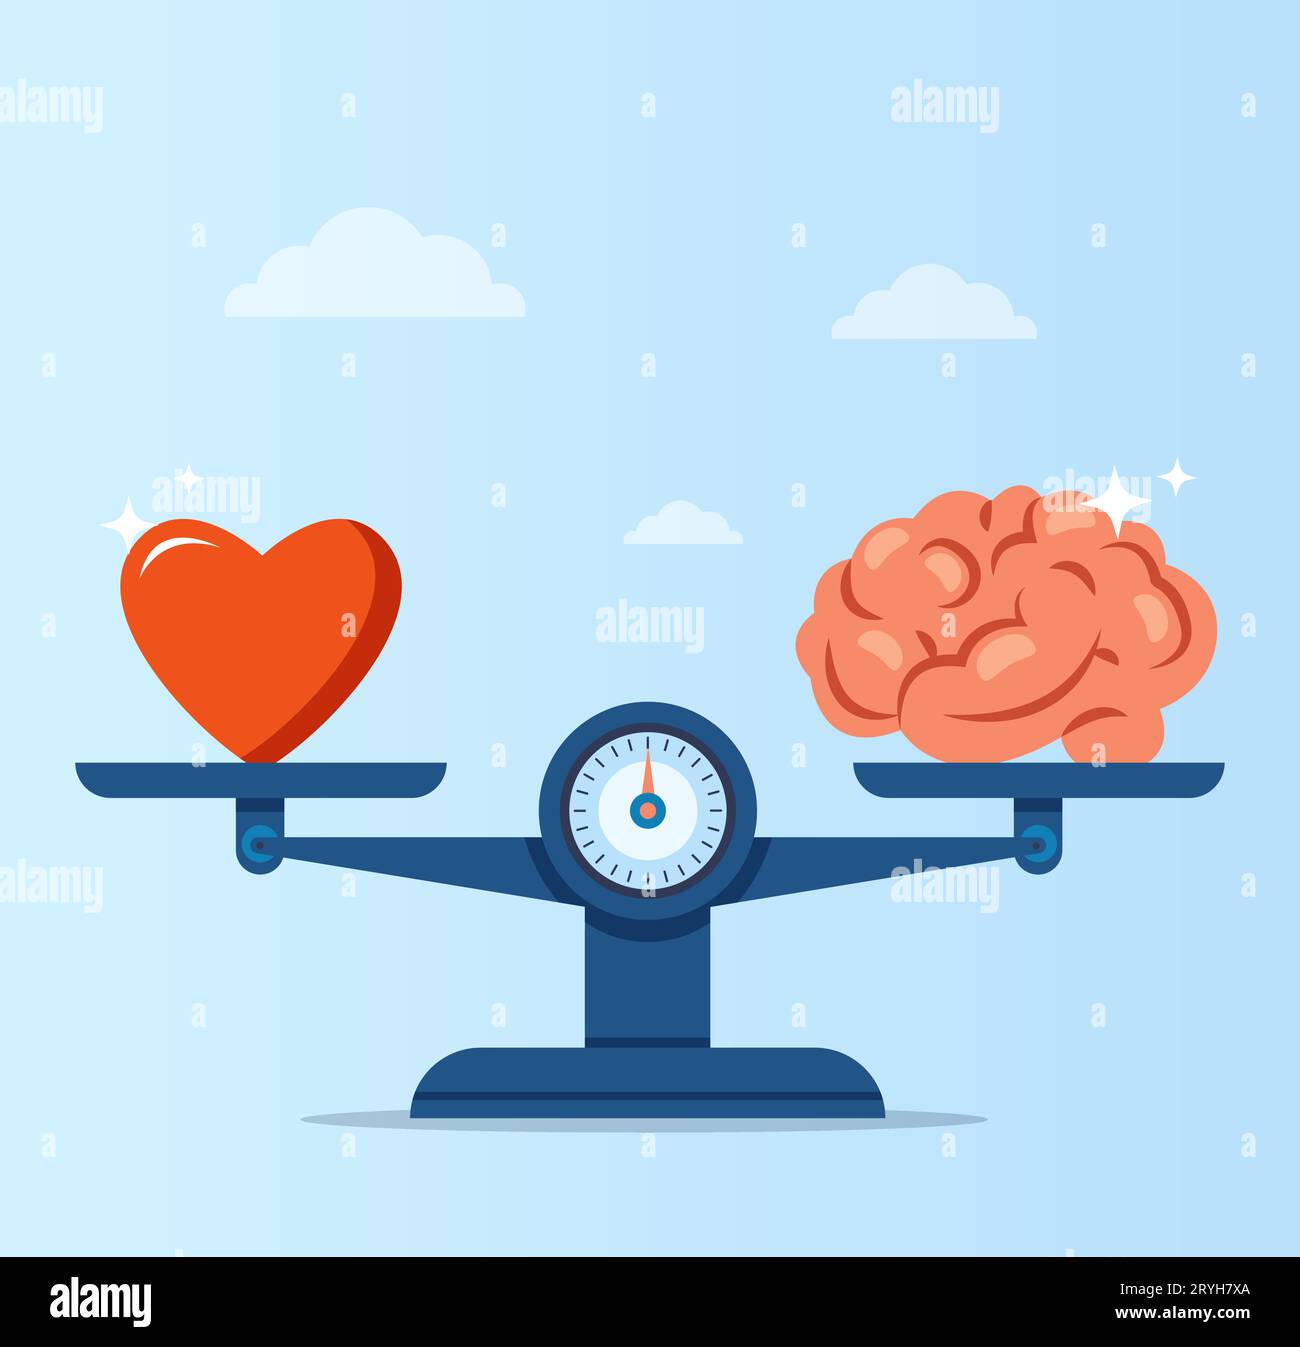 Vektor eines Herzens und eines menschlichen Gehirns auf Skalen. Konzept der emotionalen Intelligenz, Balance von Gefühlen und Intelligenz, Logik Stock Vektor